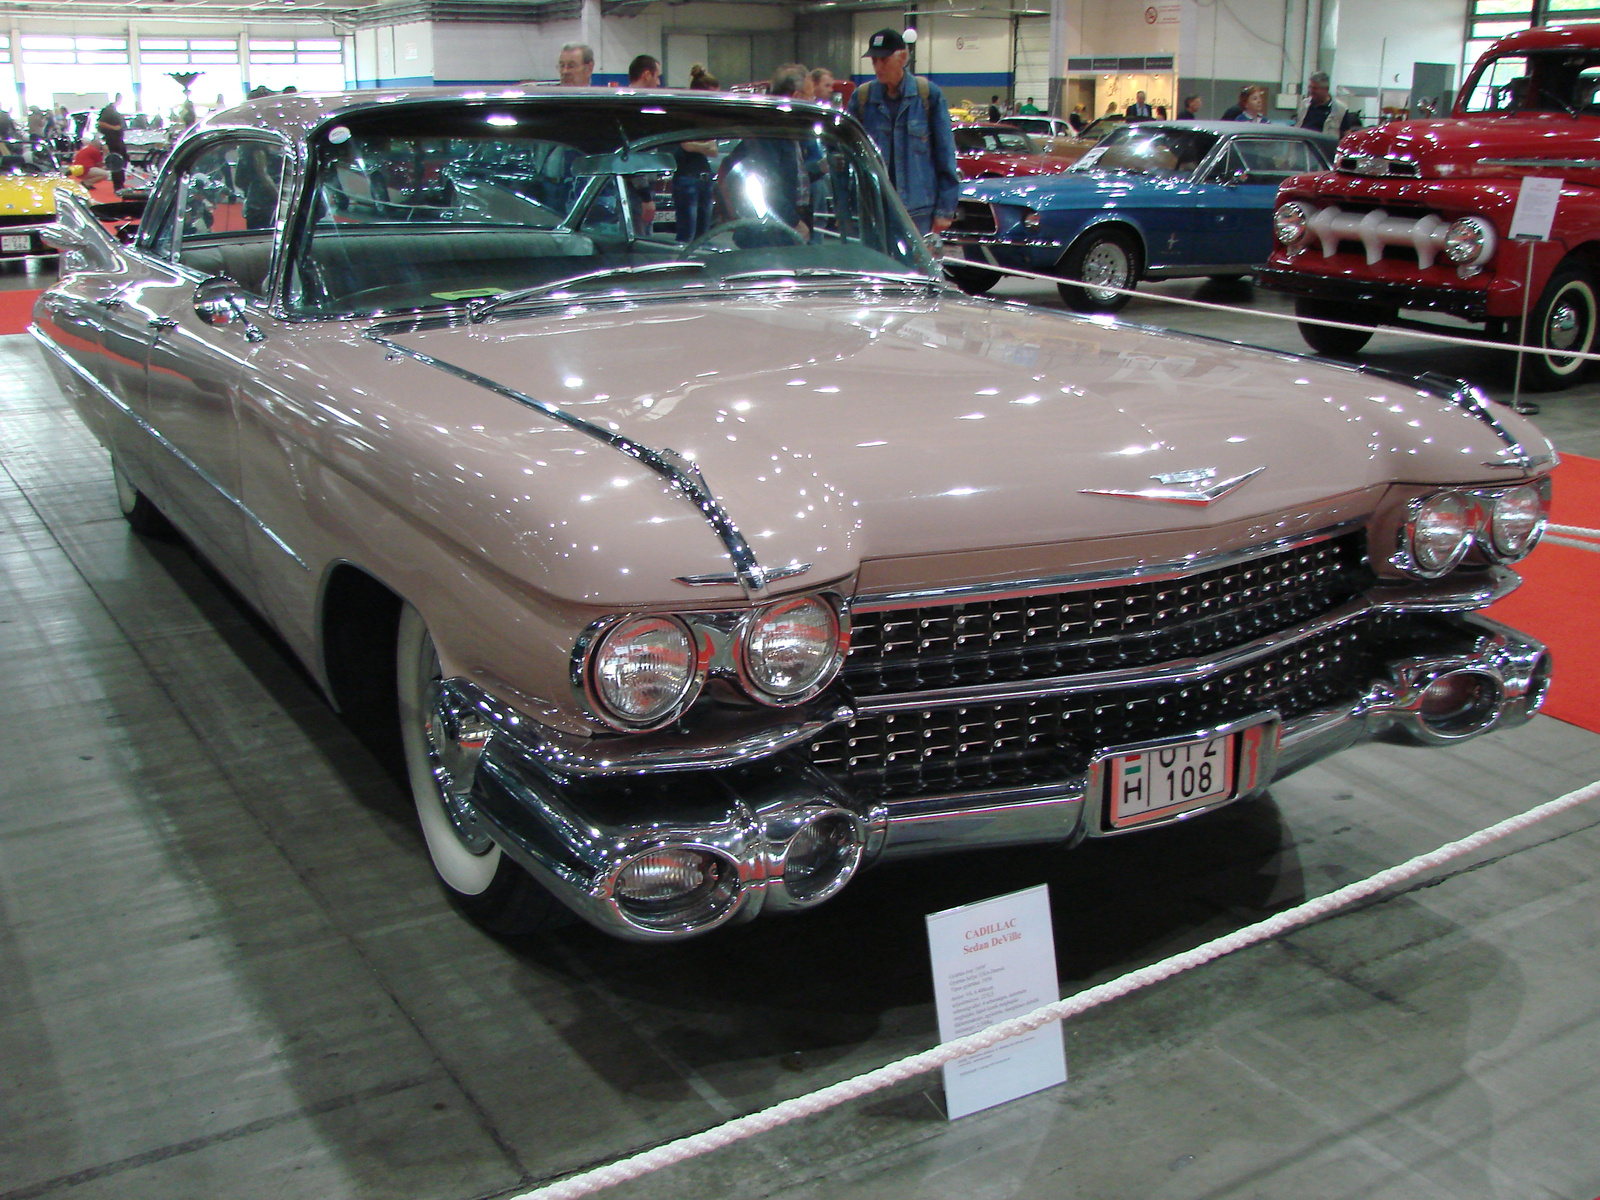 Cadillac Sedan de Ville